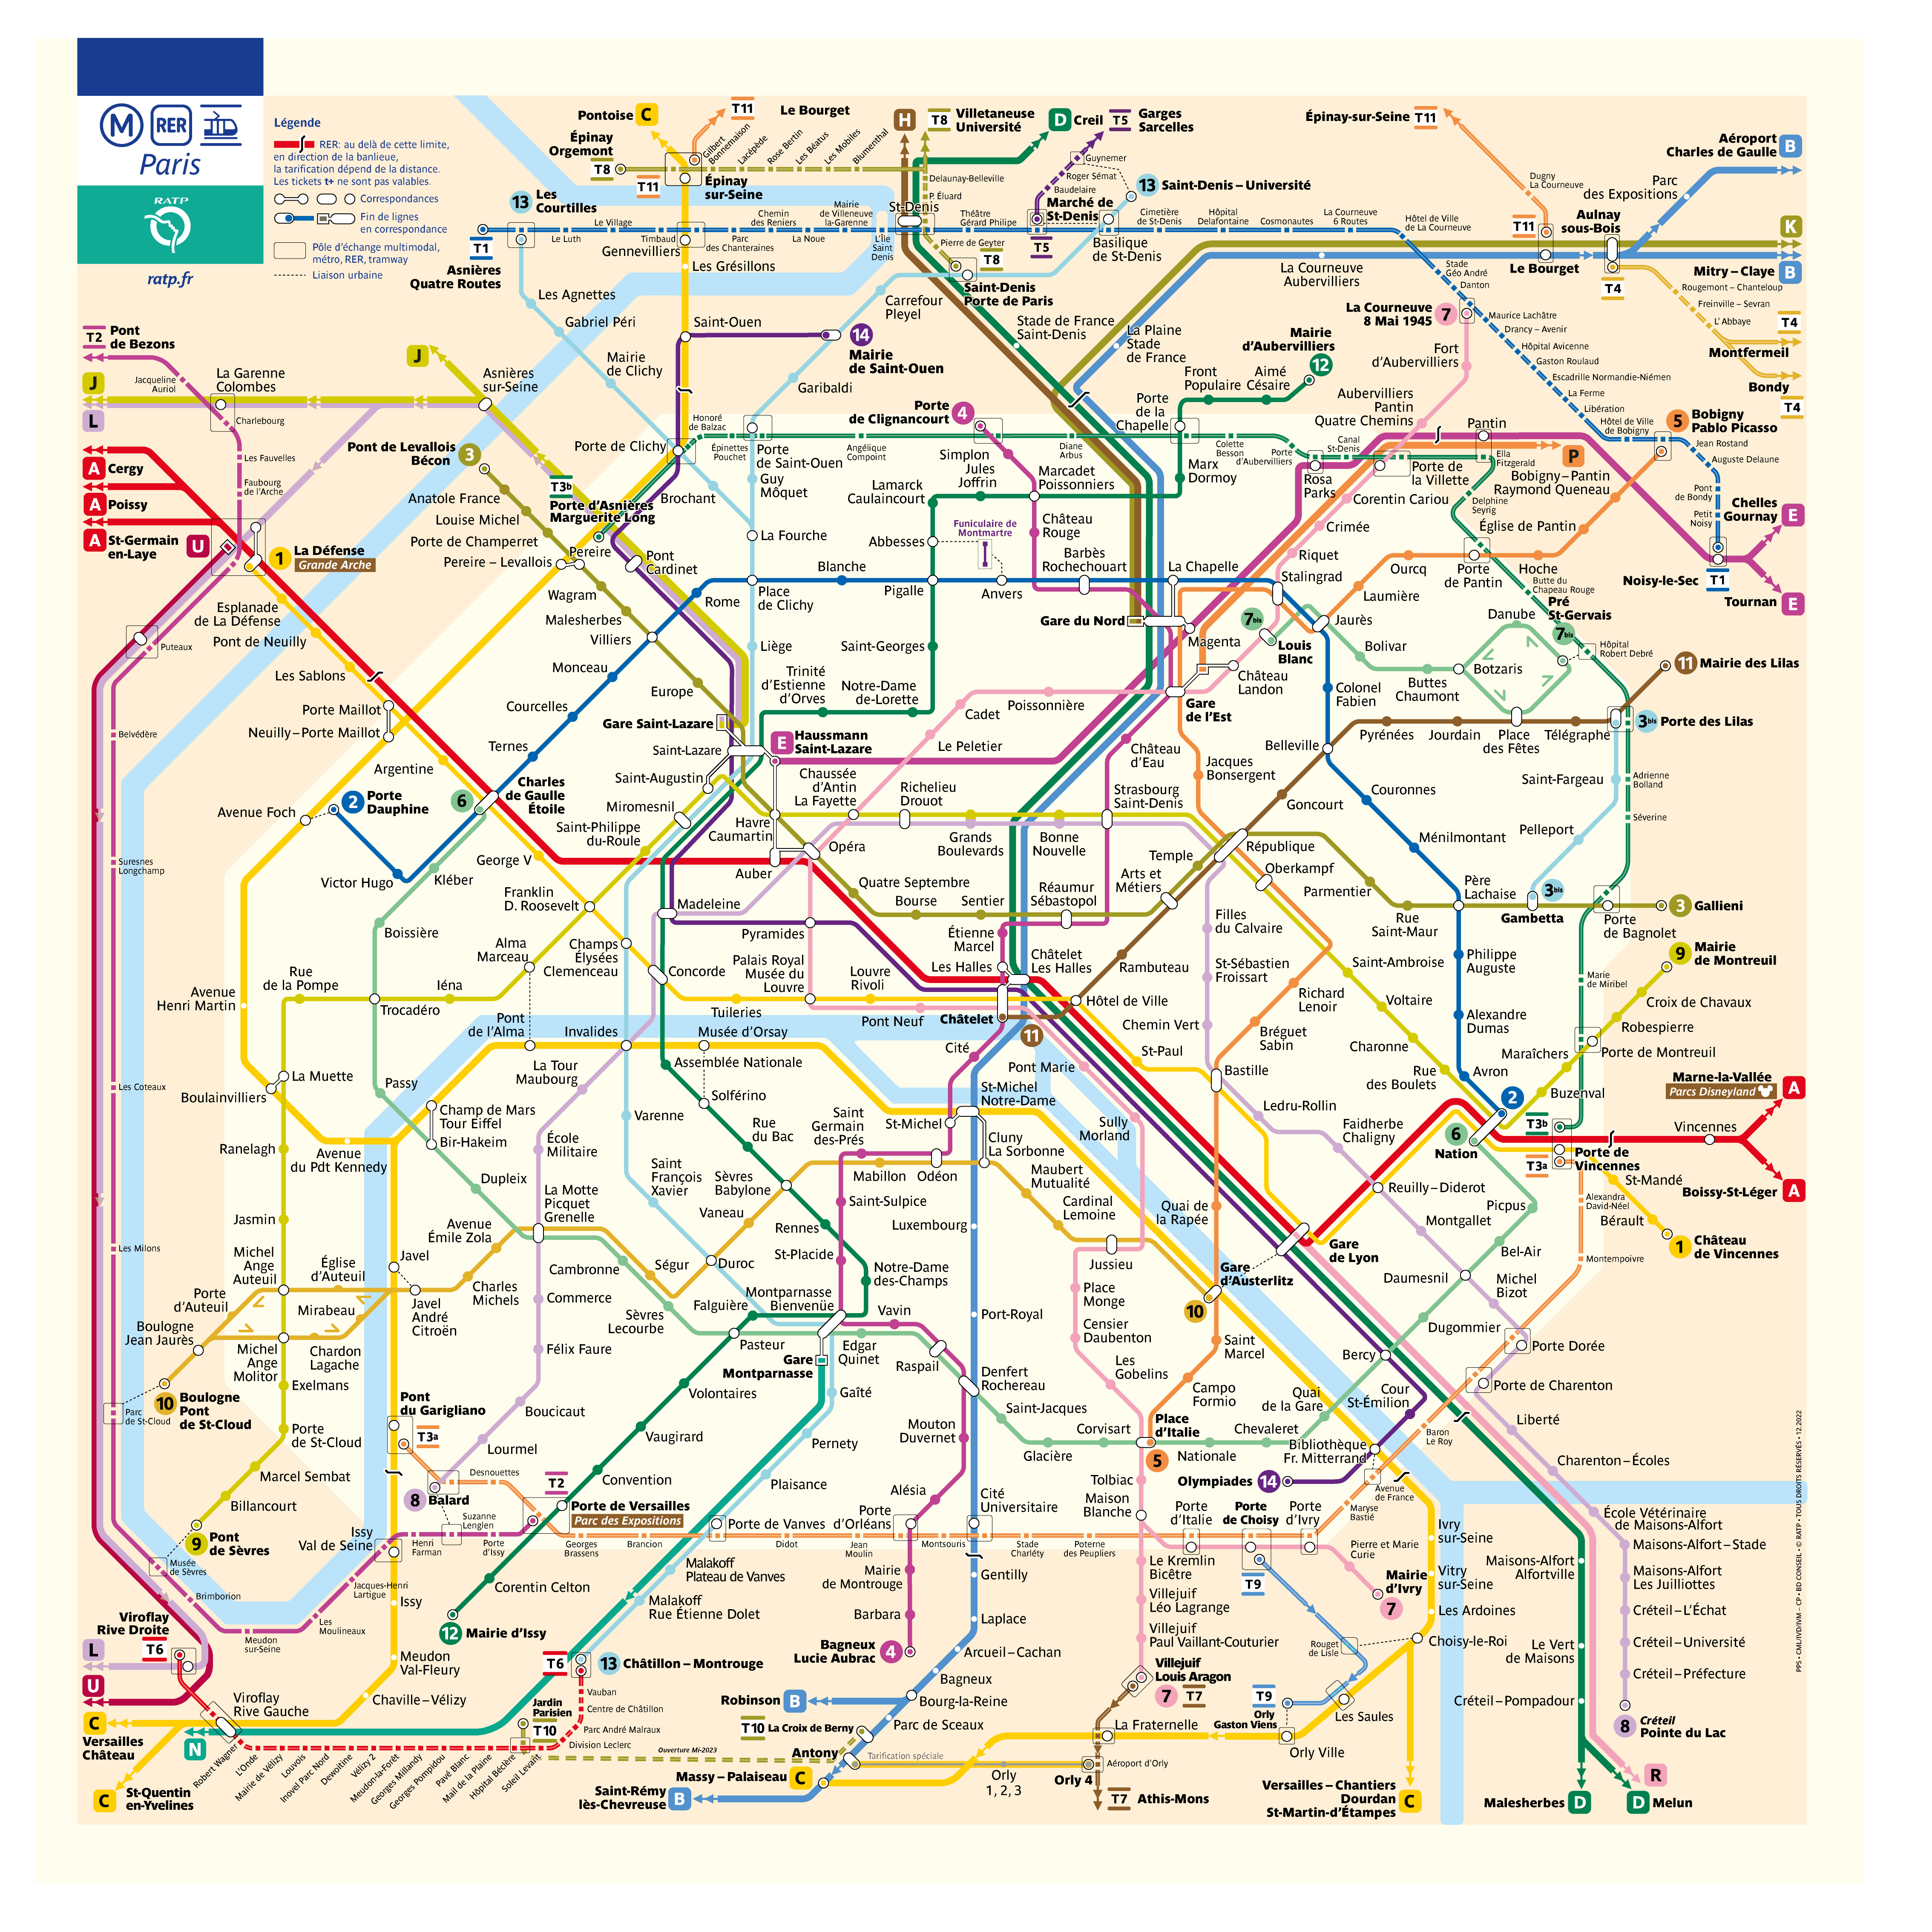 paris metro travel plan